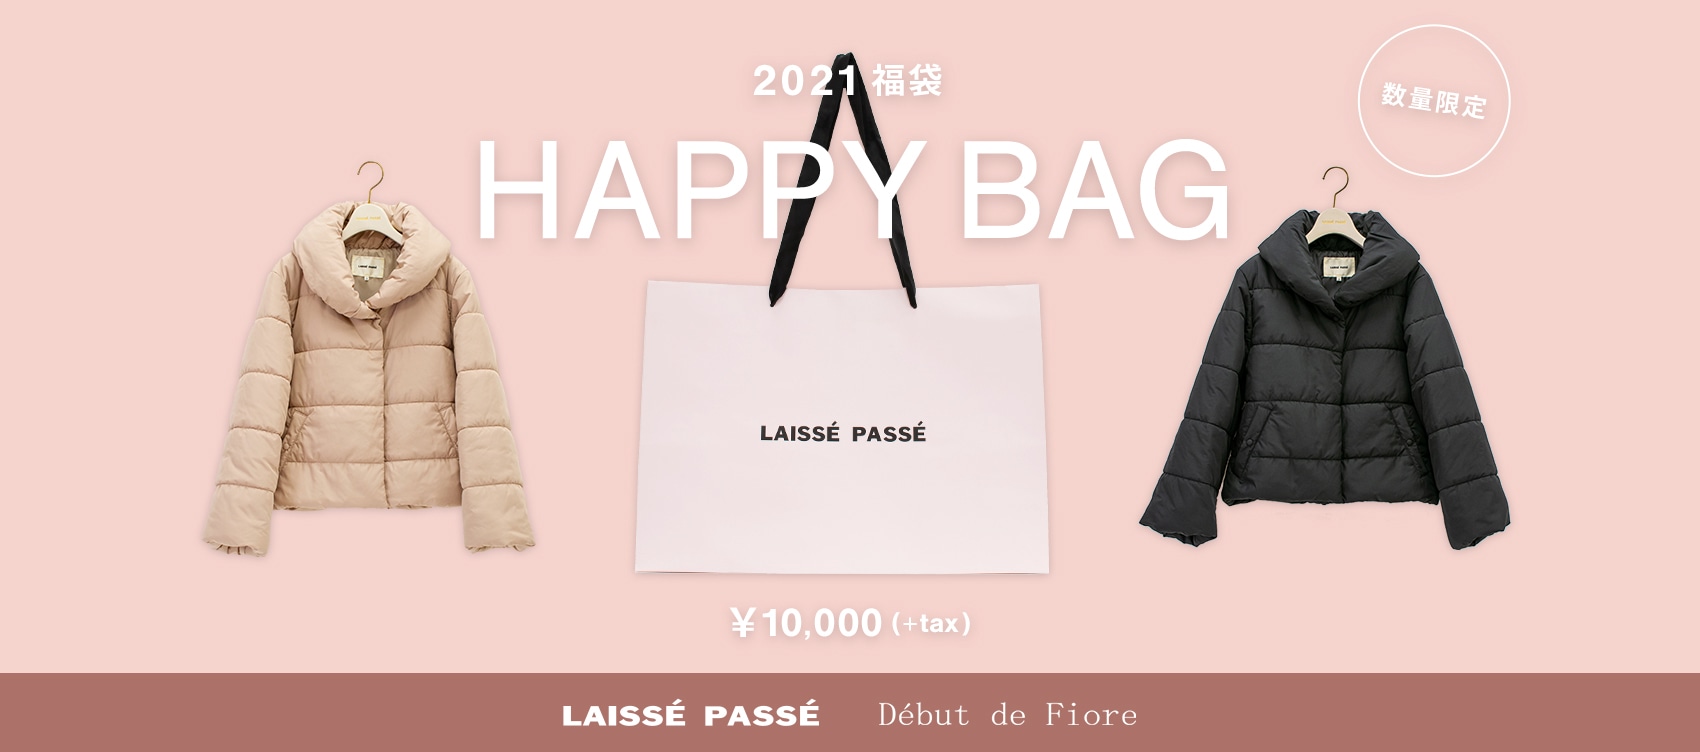 LAISSE PASSE Debut de Fiore 2021福袋 HAPPY BAG ￥10,000 (+tax)